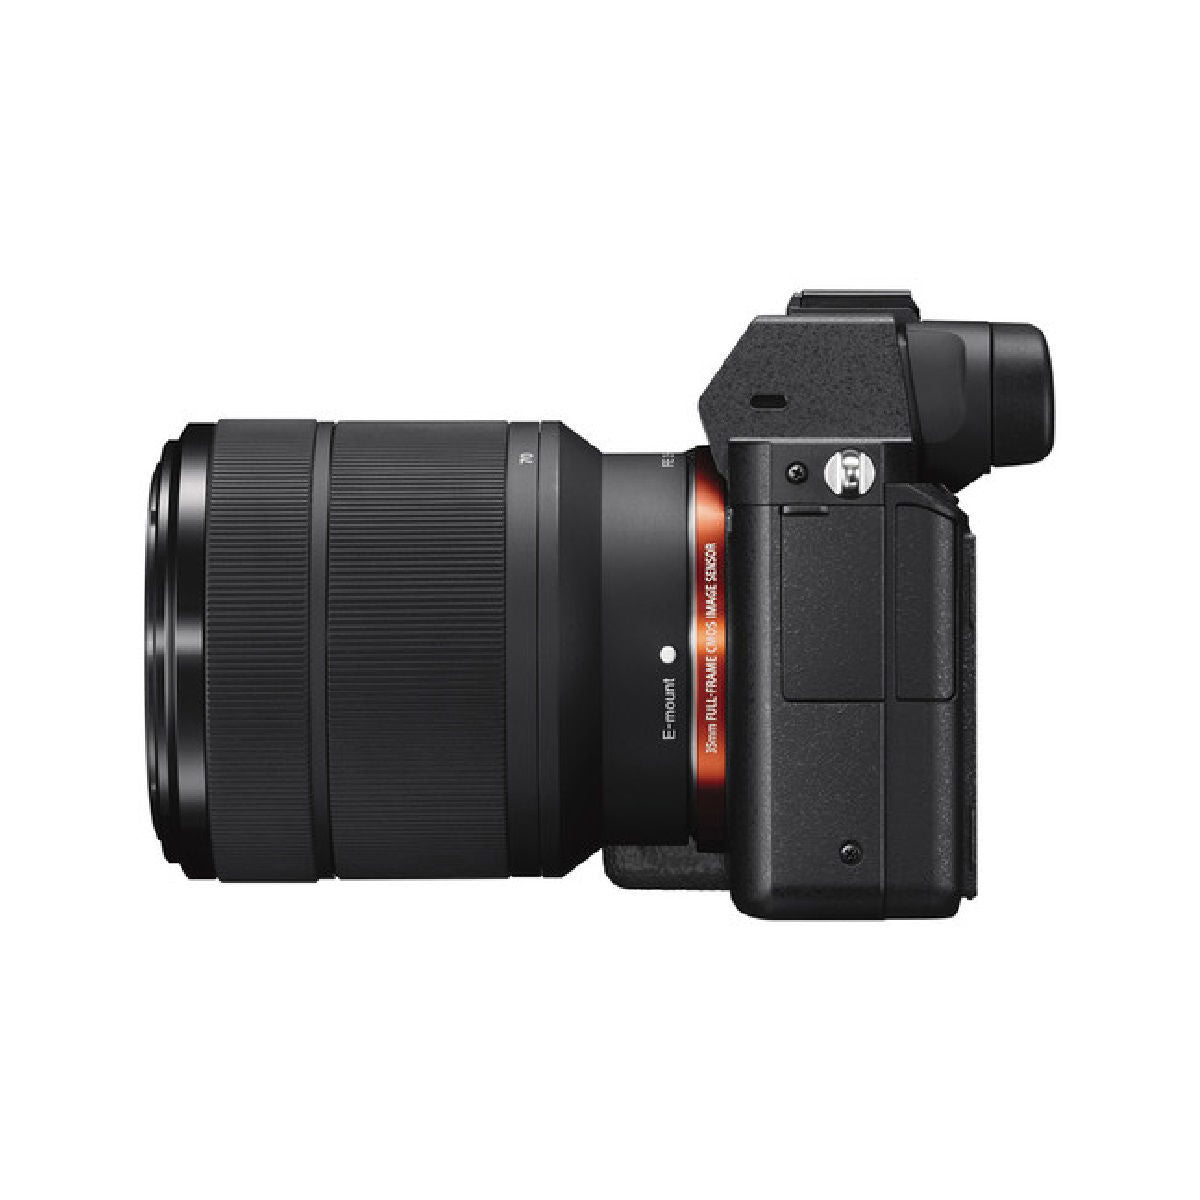 Sony Alpha A7 II मिररलेस डिजिटल कैमरा Fe 28-70mm लेंस के साथ